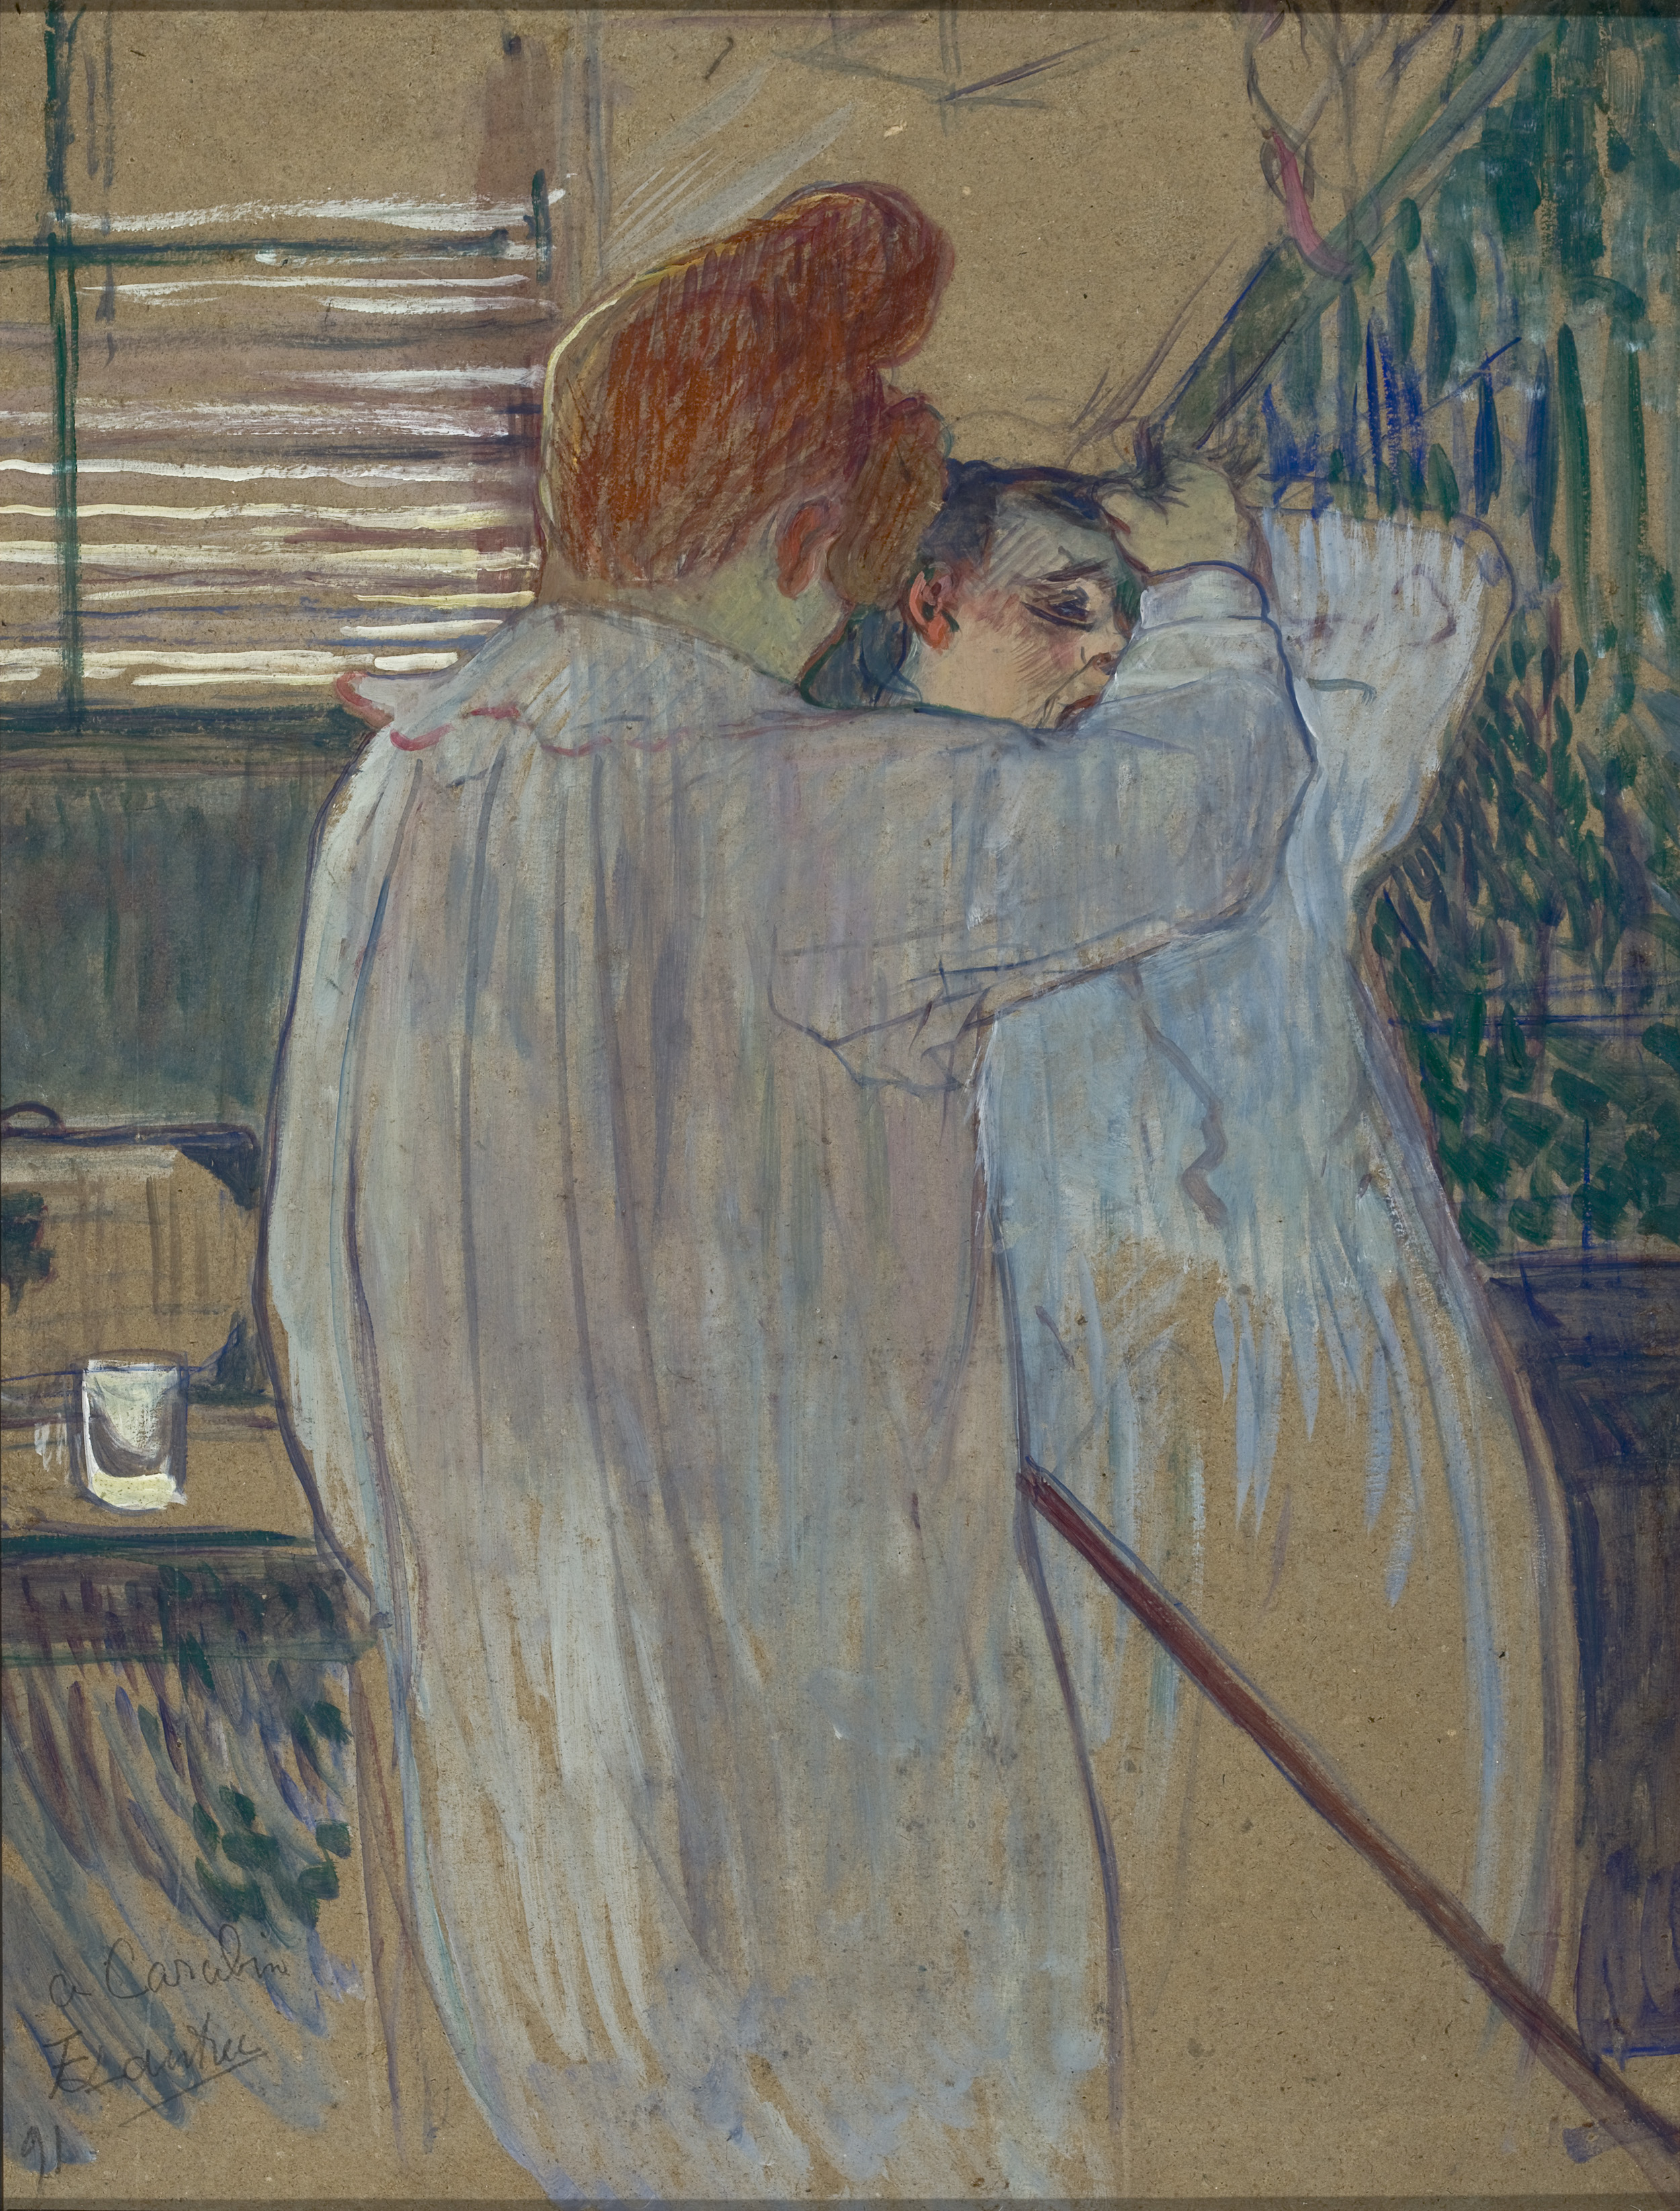 Žena češící si vlasy — Dvě ženy oblékající si noční košile by Henri de Toulouse-Lautrec - 1891 